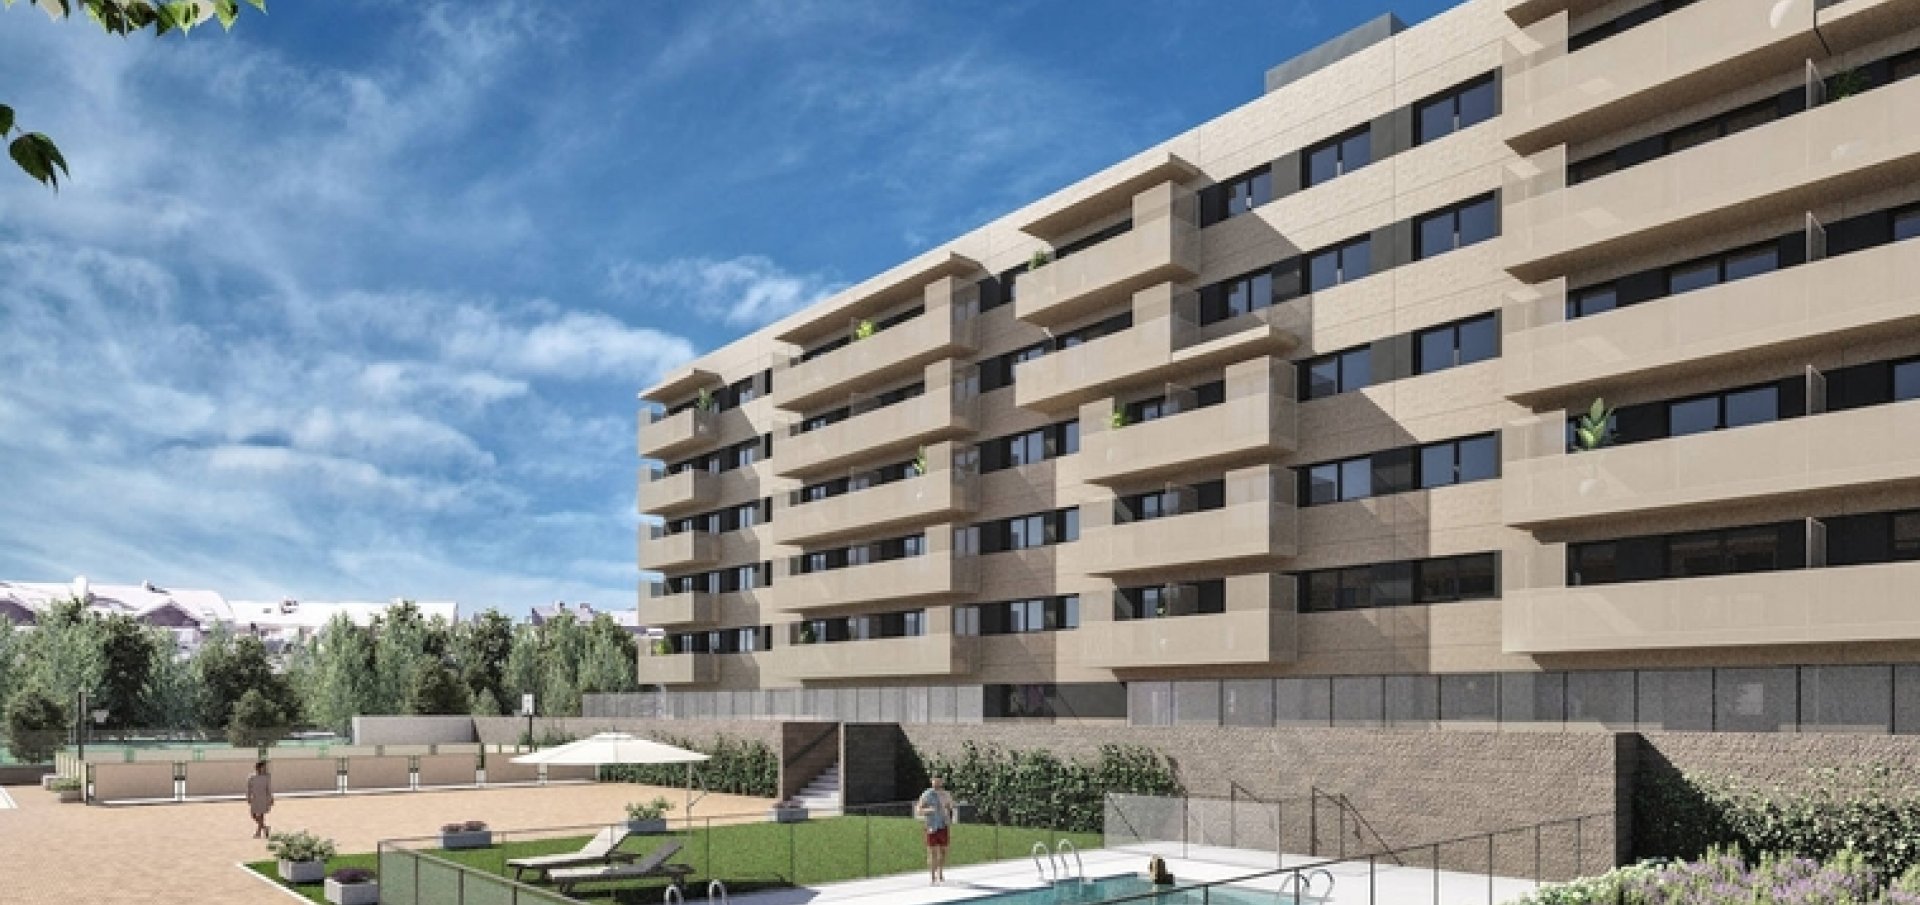 viviendas del Plan VIVE en Alcorcón